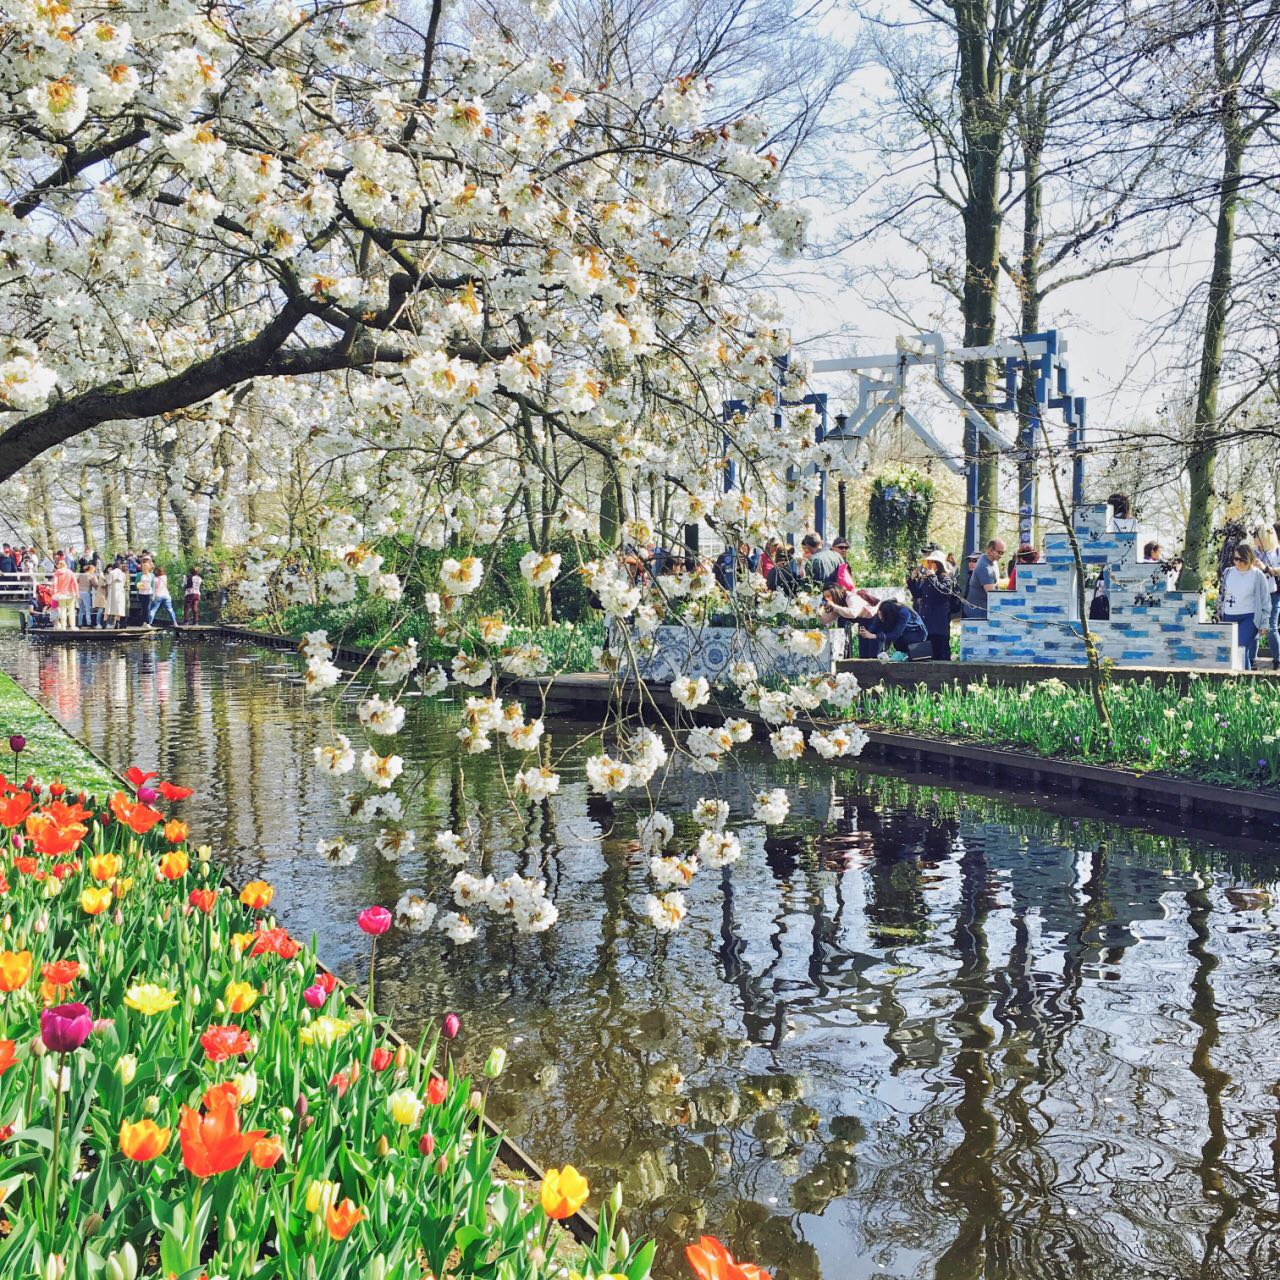 风车之国荷兰 明信片之都阿姆斯特丹 漫步花海